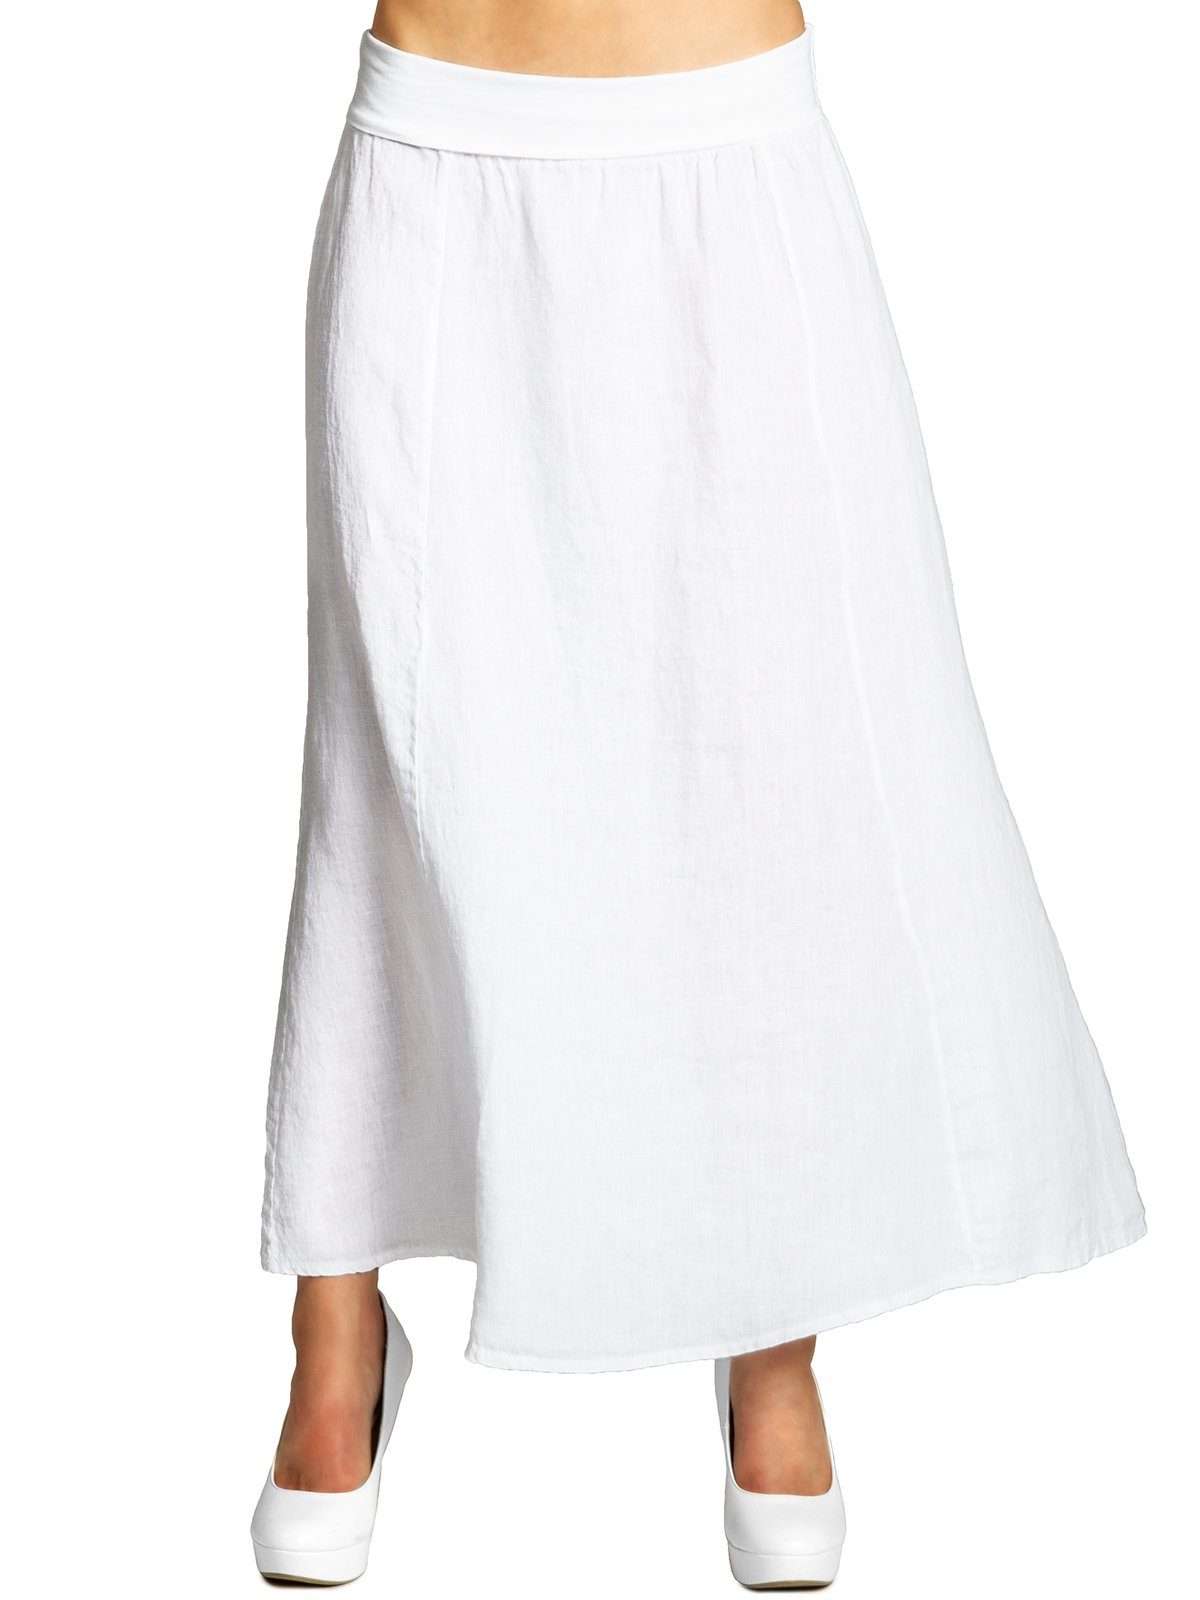 Плиссированная юбка RO019 женская длинная летняя льняная юбка макси